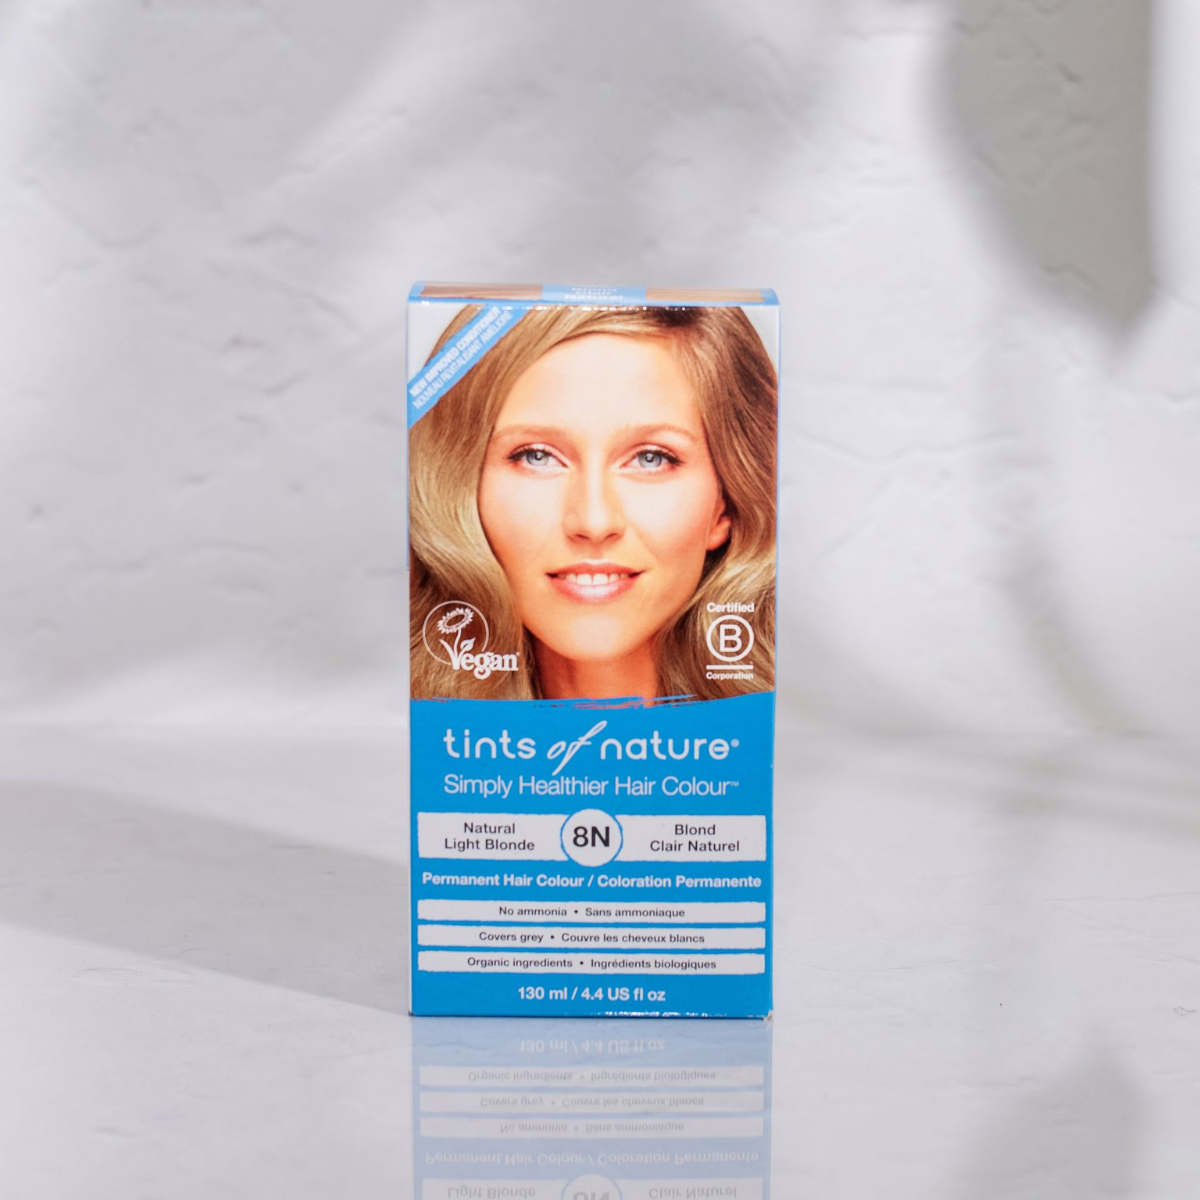 En Økologisk hårfarve - Tints of Nature 8N Light Blonde 130 ml æske med et kvindeansigt på, der fremmer helbred og velvære.